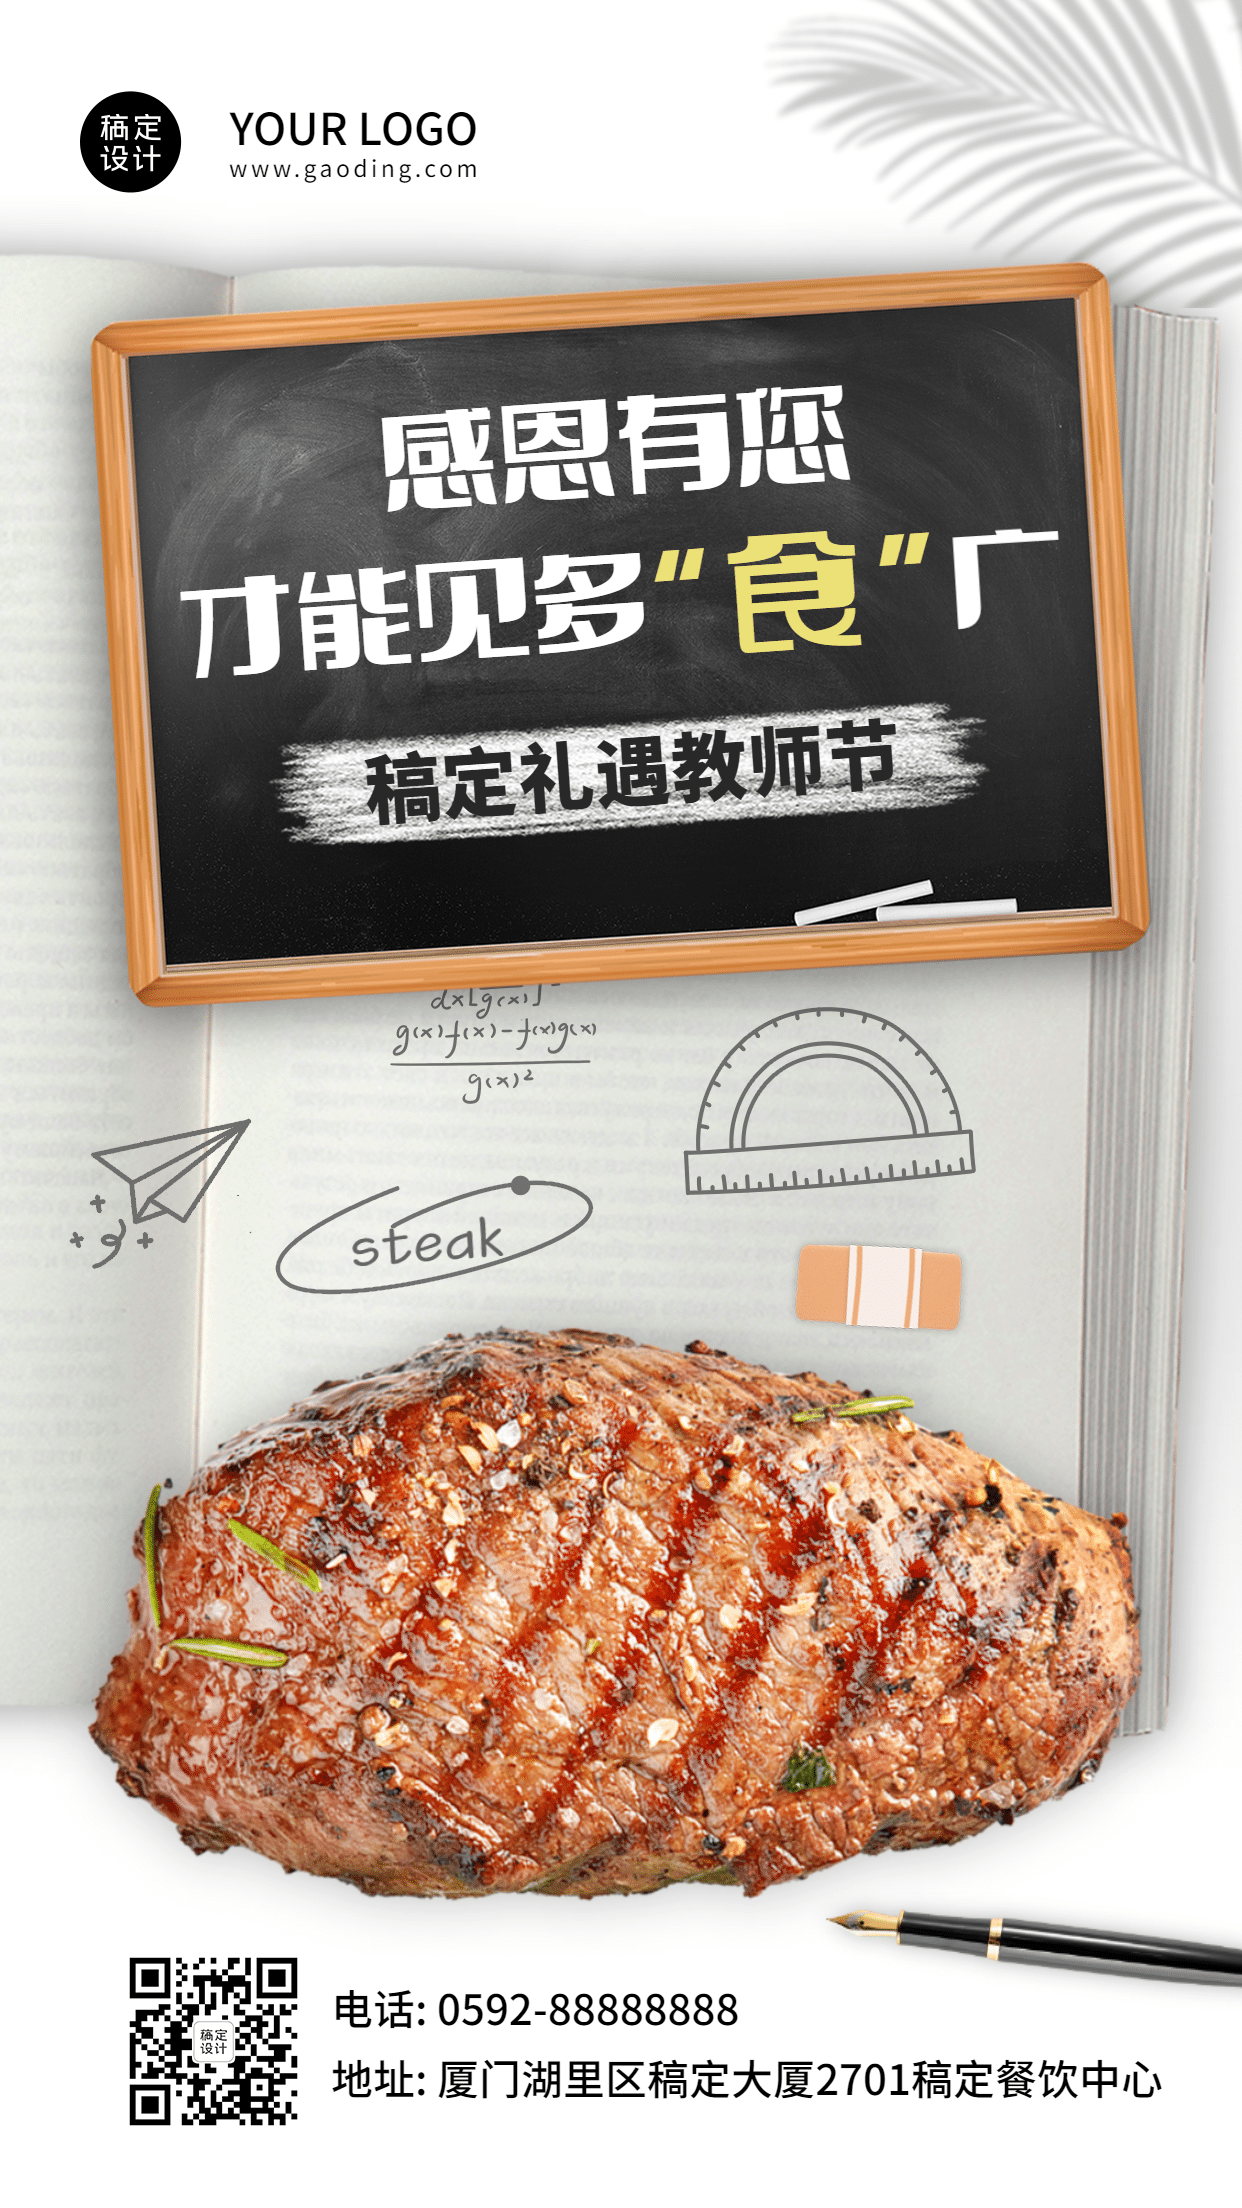 教师节餐饮美食节日营销实景海报预览效果